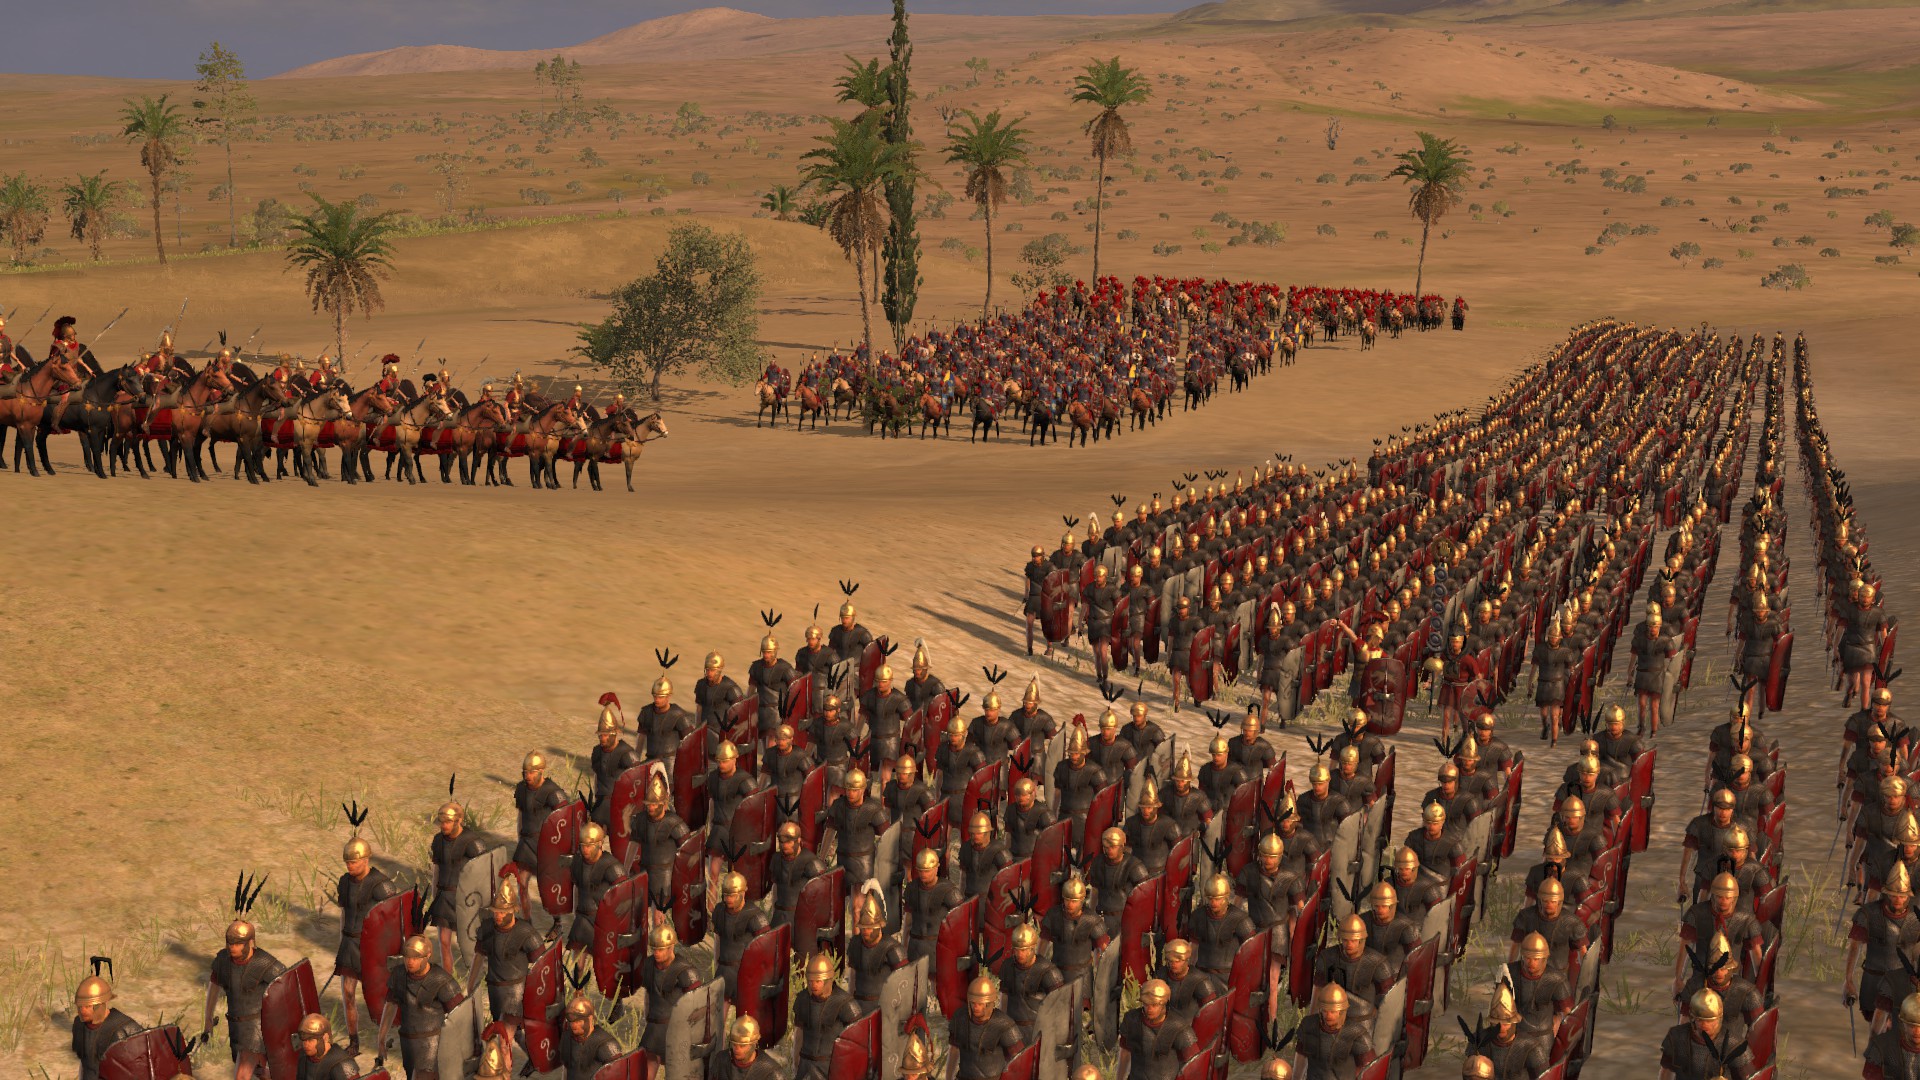 Как изменилась римская армия 5 класс